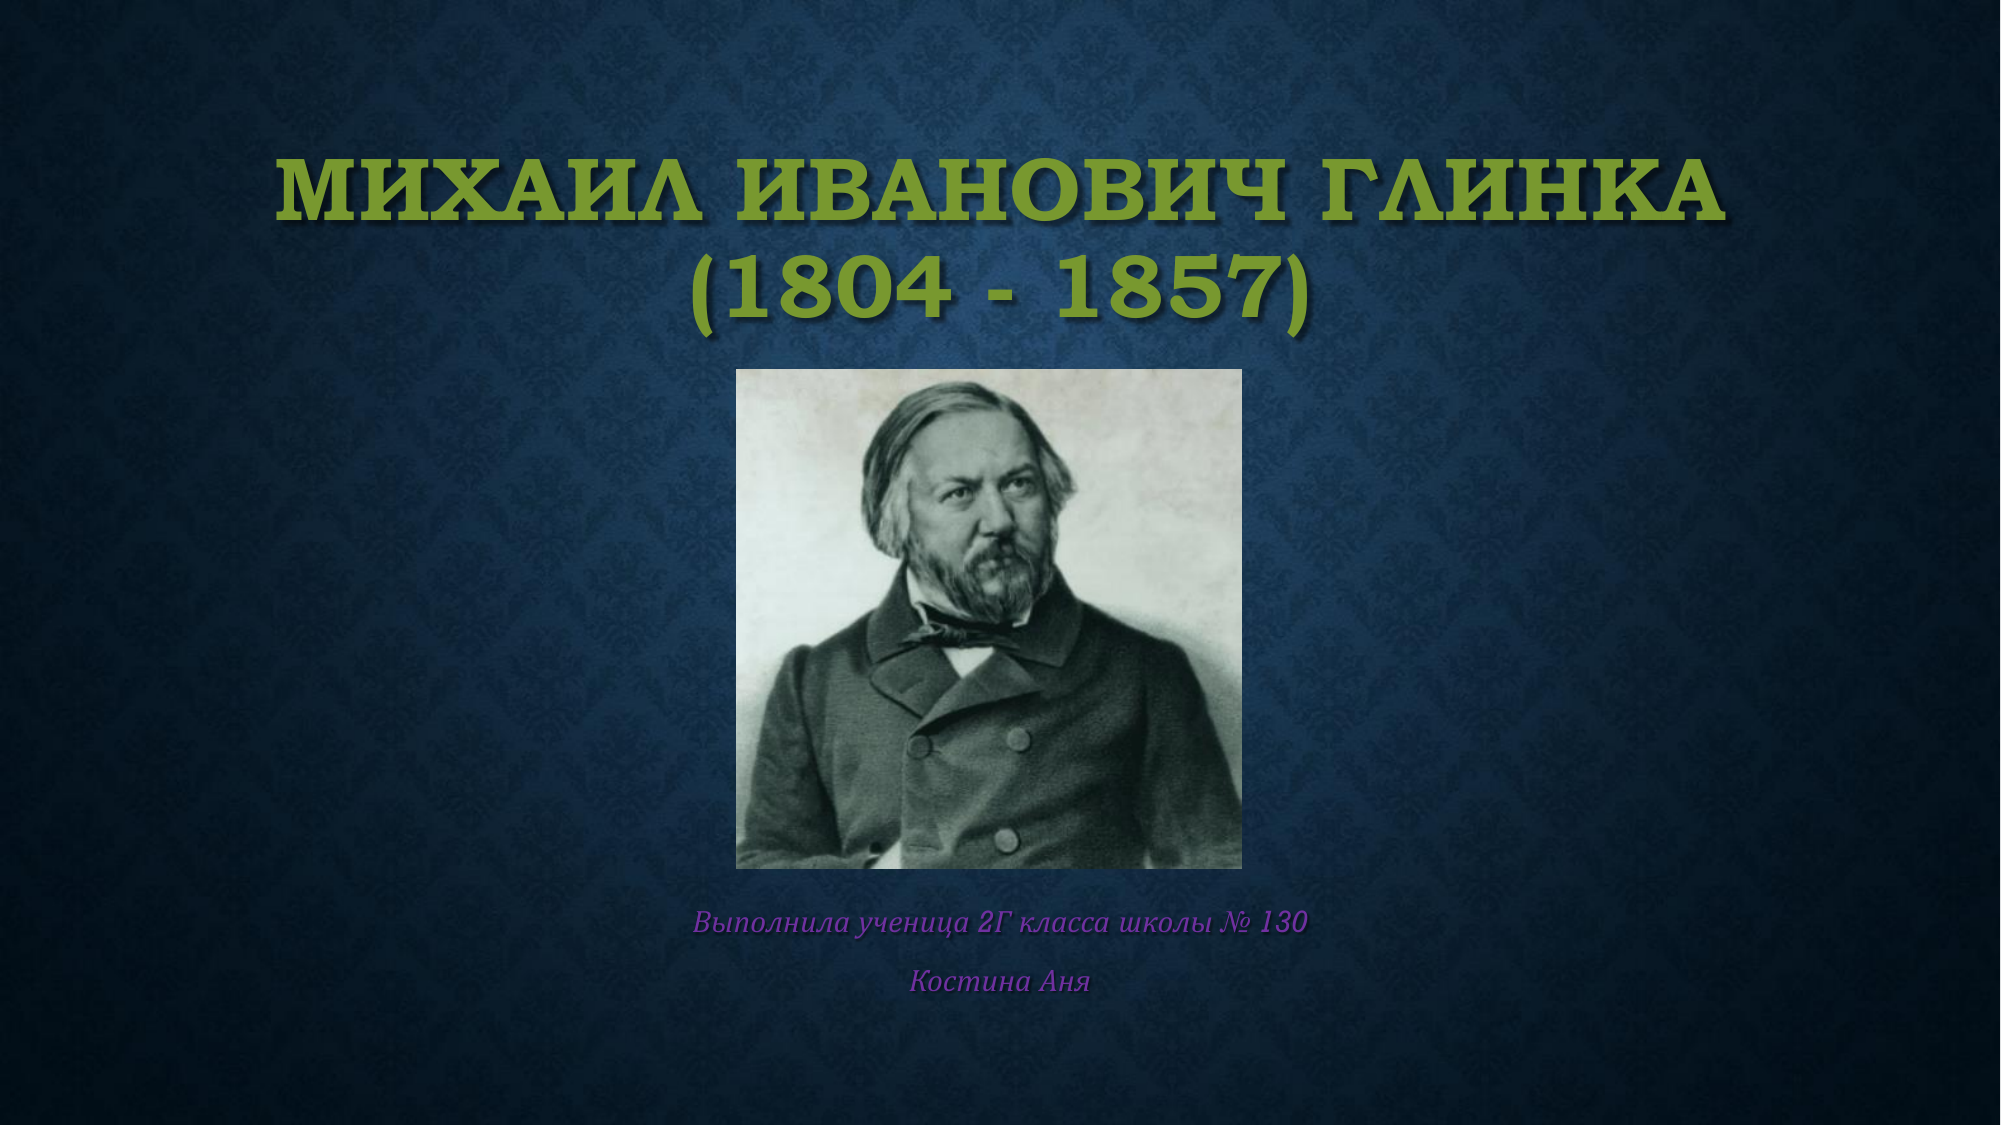 Михаил Иванович Глинка (1804 - 1857 гг.)